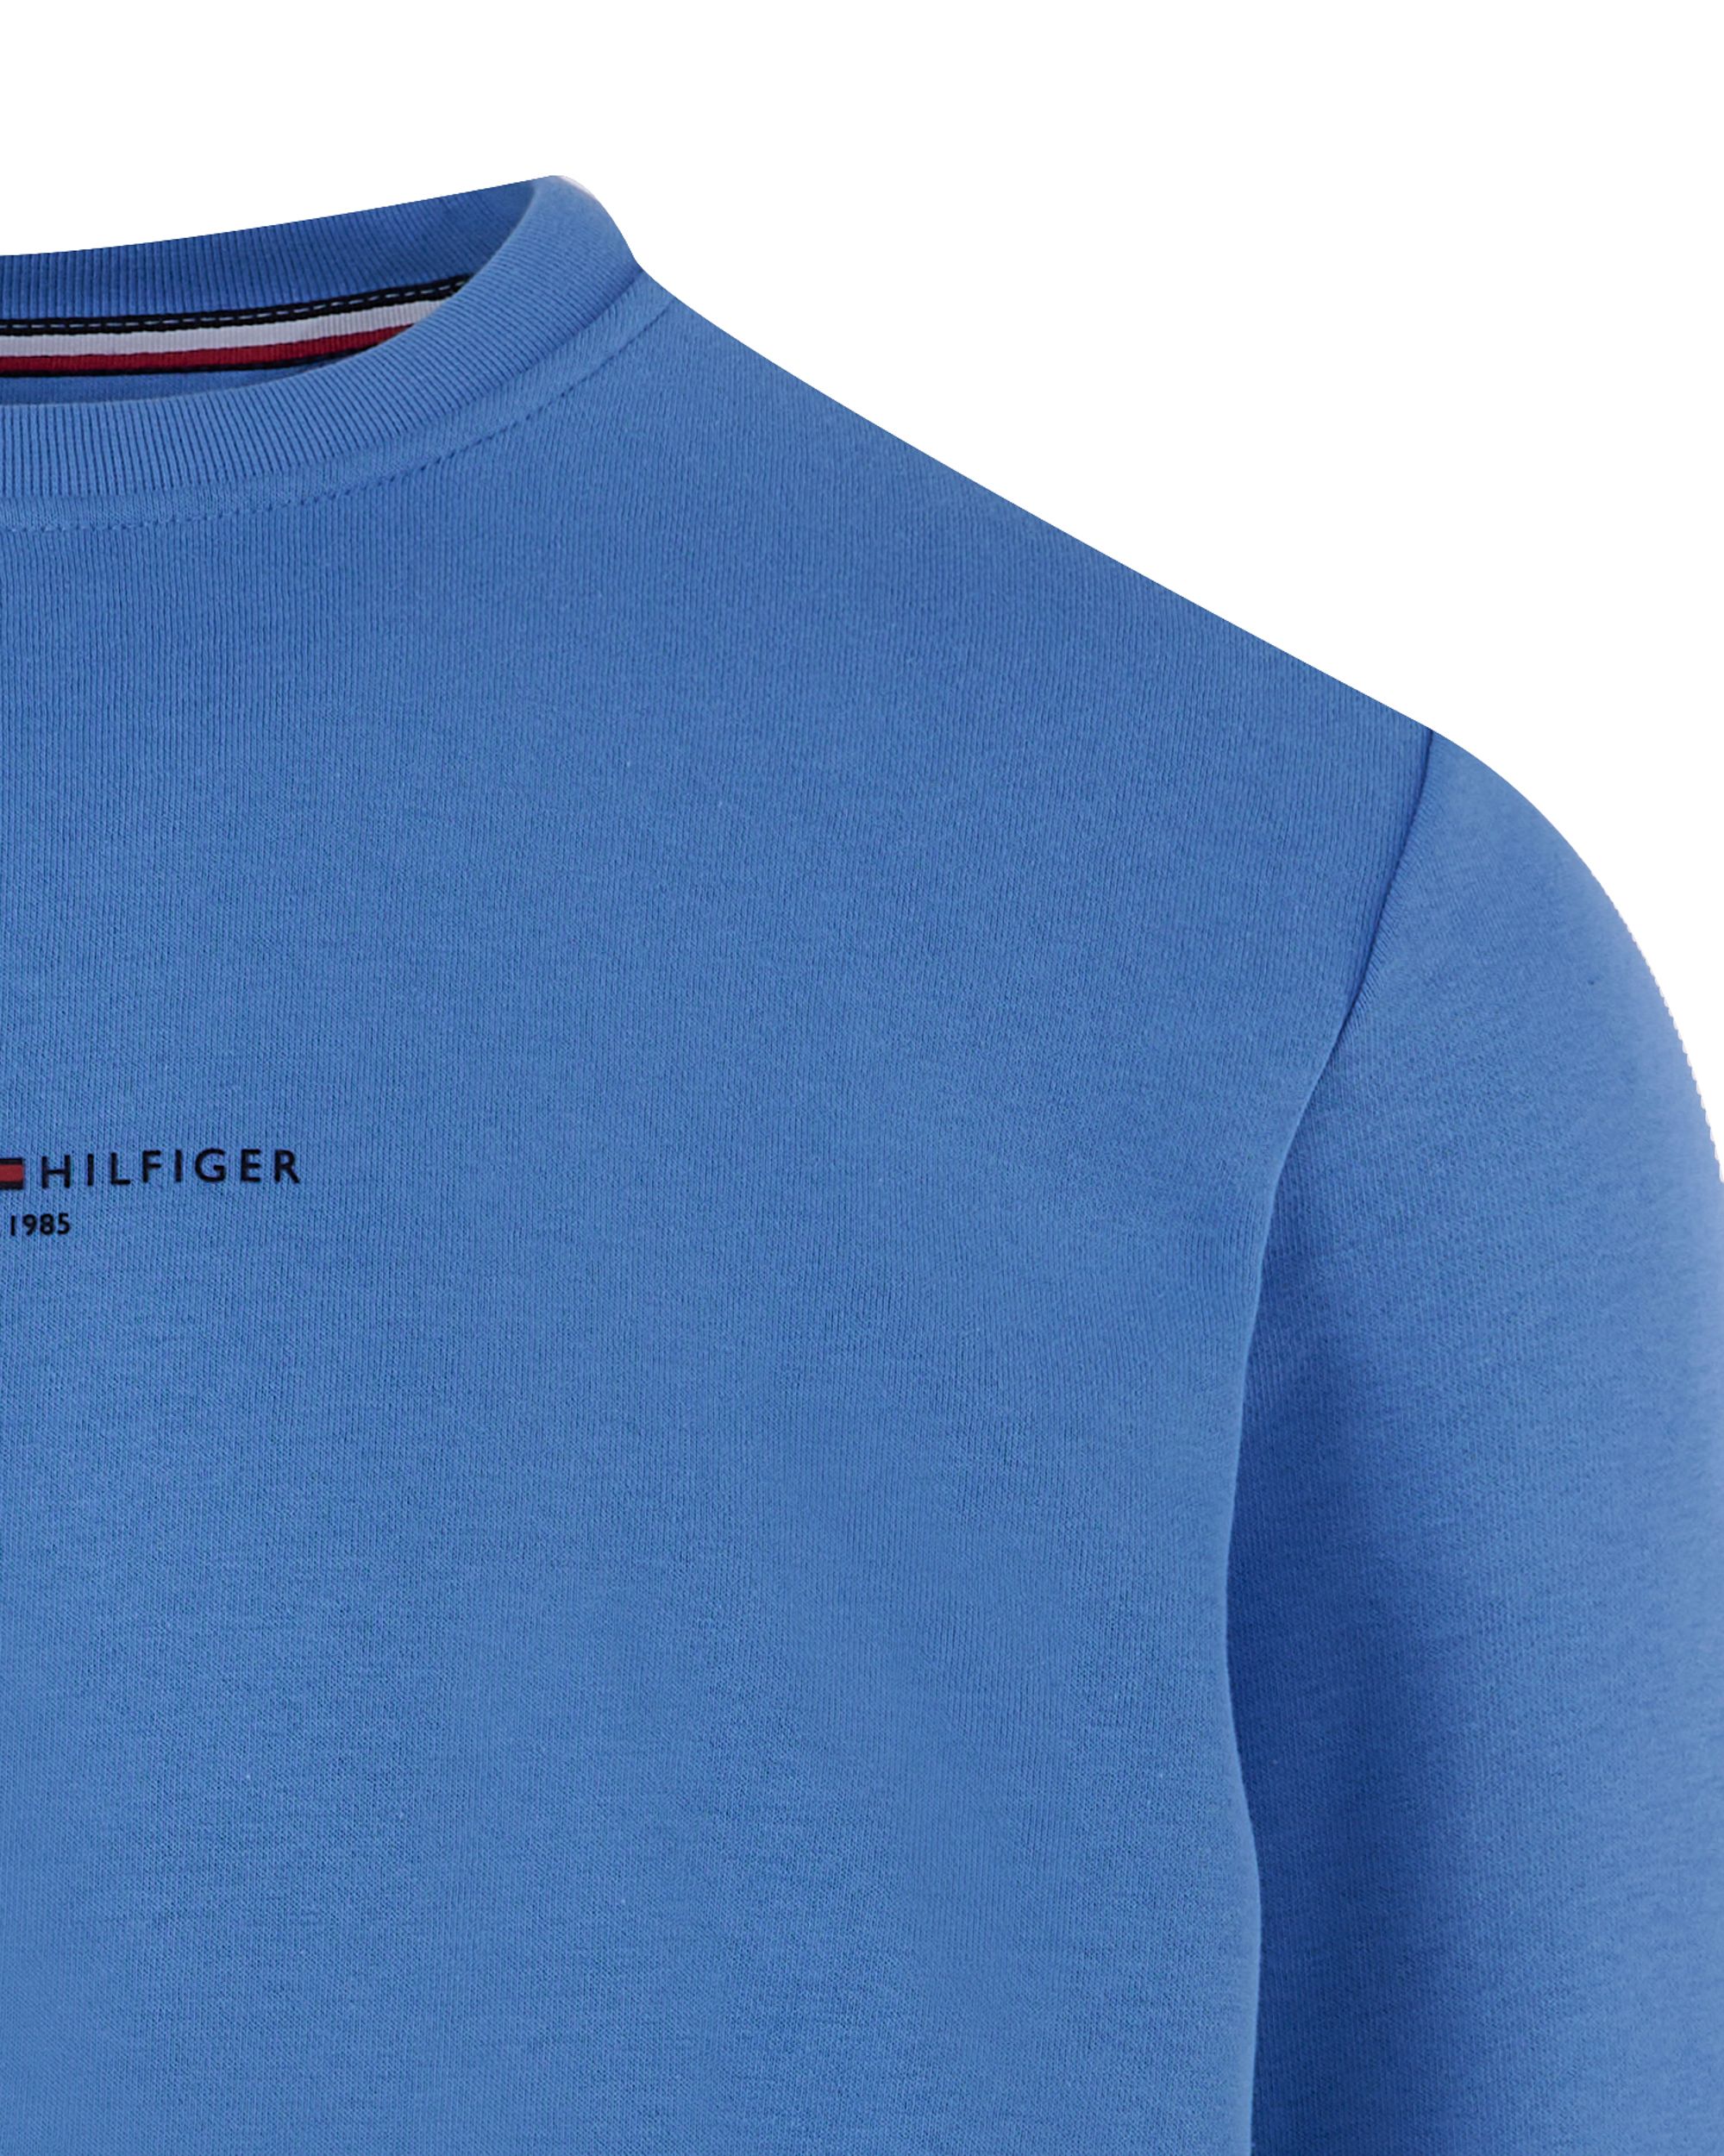 Tommy Hilfiger Menswear Sweater Blauw 093021-001-L